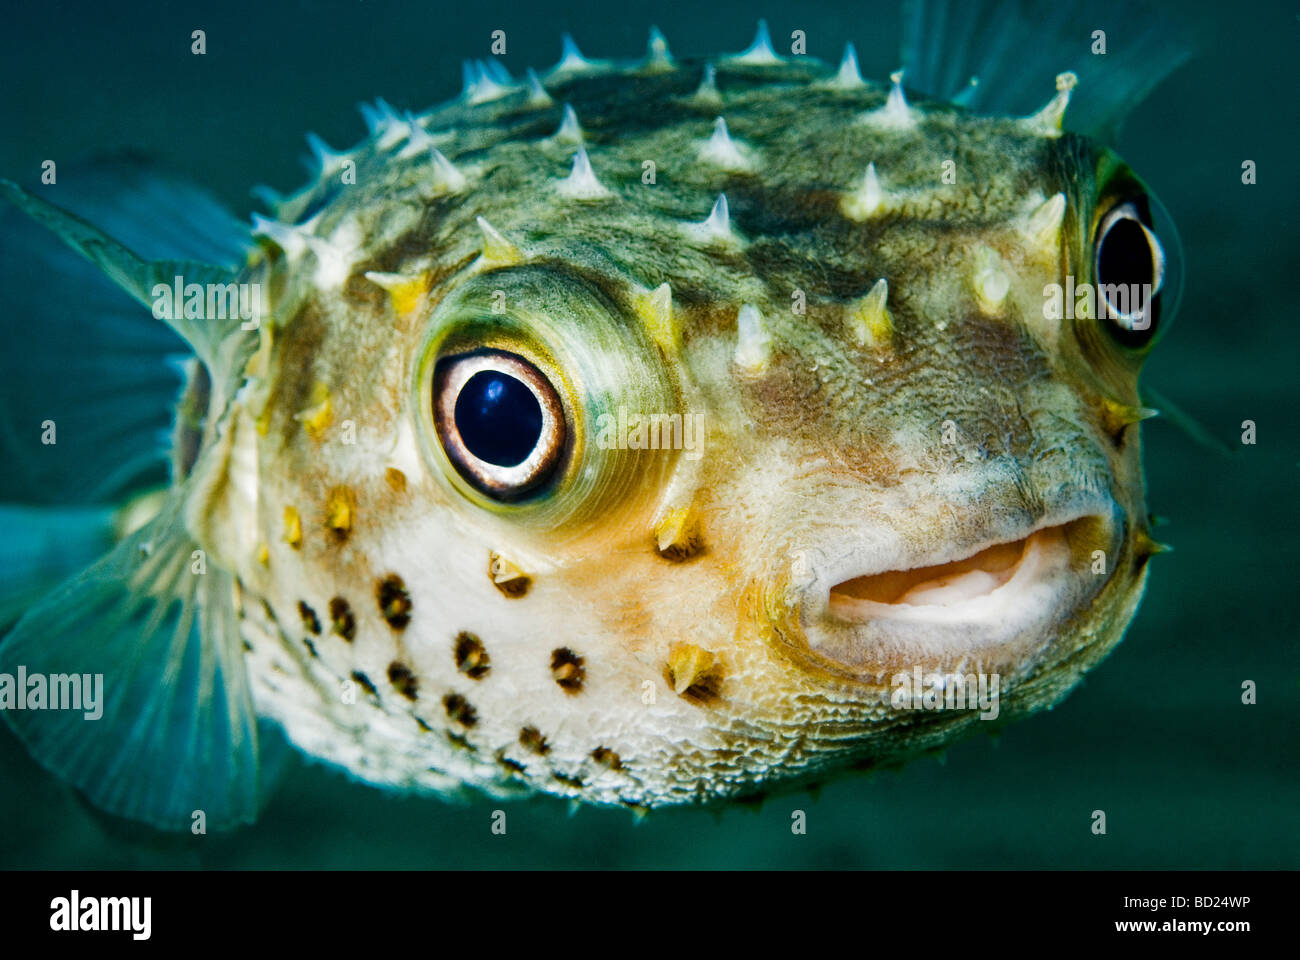 puffer fish Stock Photo